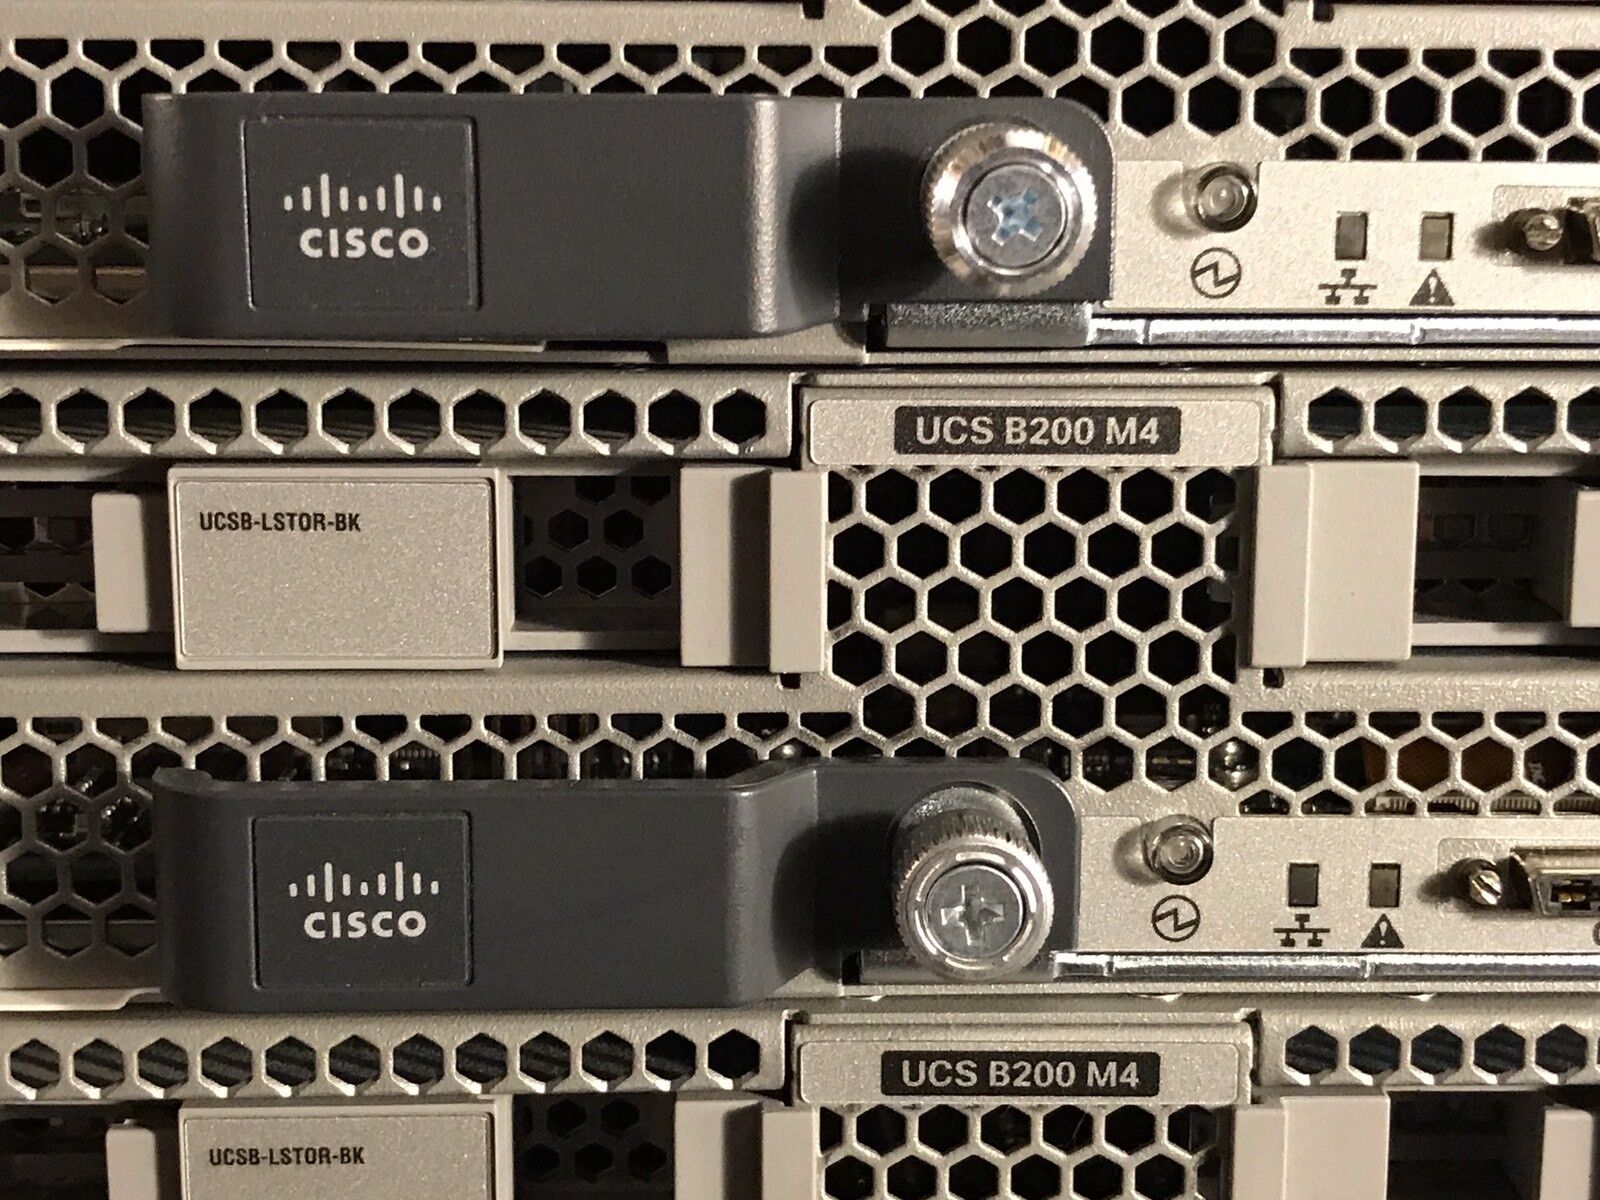 Lot of 8 Cisco B200 M4 16x E5-2660V3 1024GB Blade Server VIC1240 UCS-MR-1X162RU